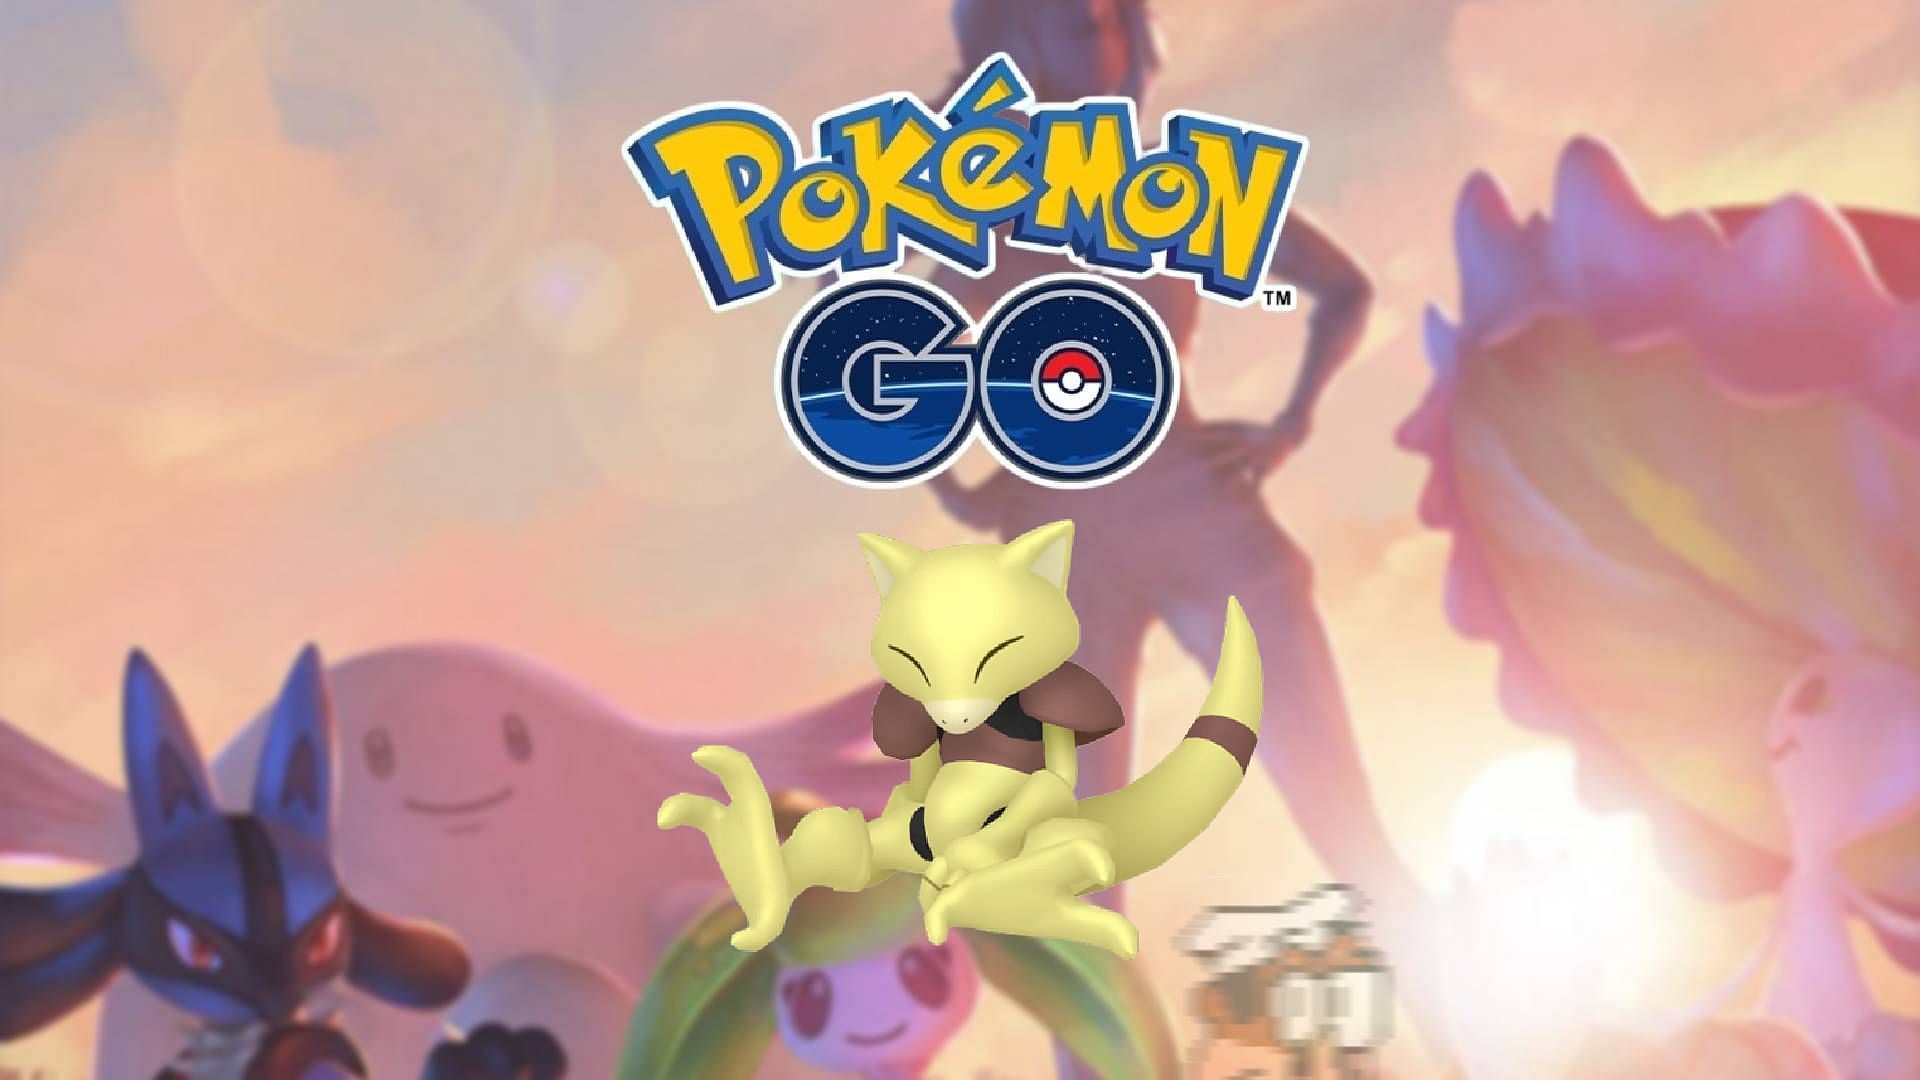 Pokémon Go Abra Community Day: How To Get A Shiny, Powerful